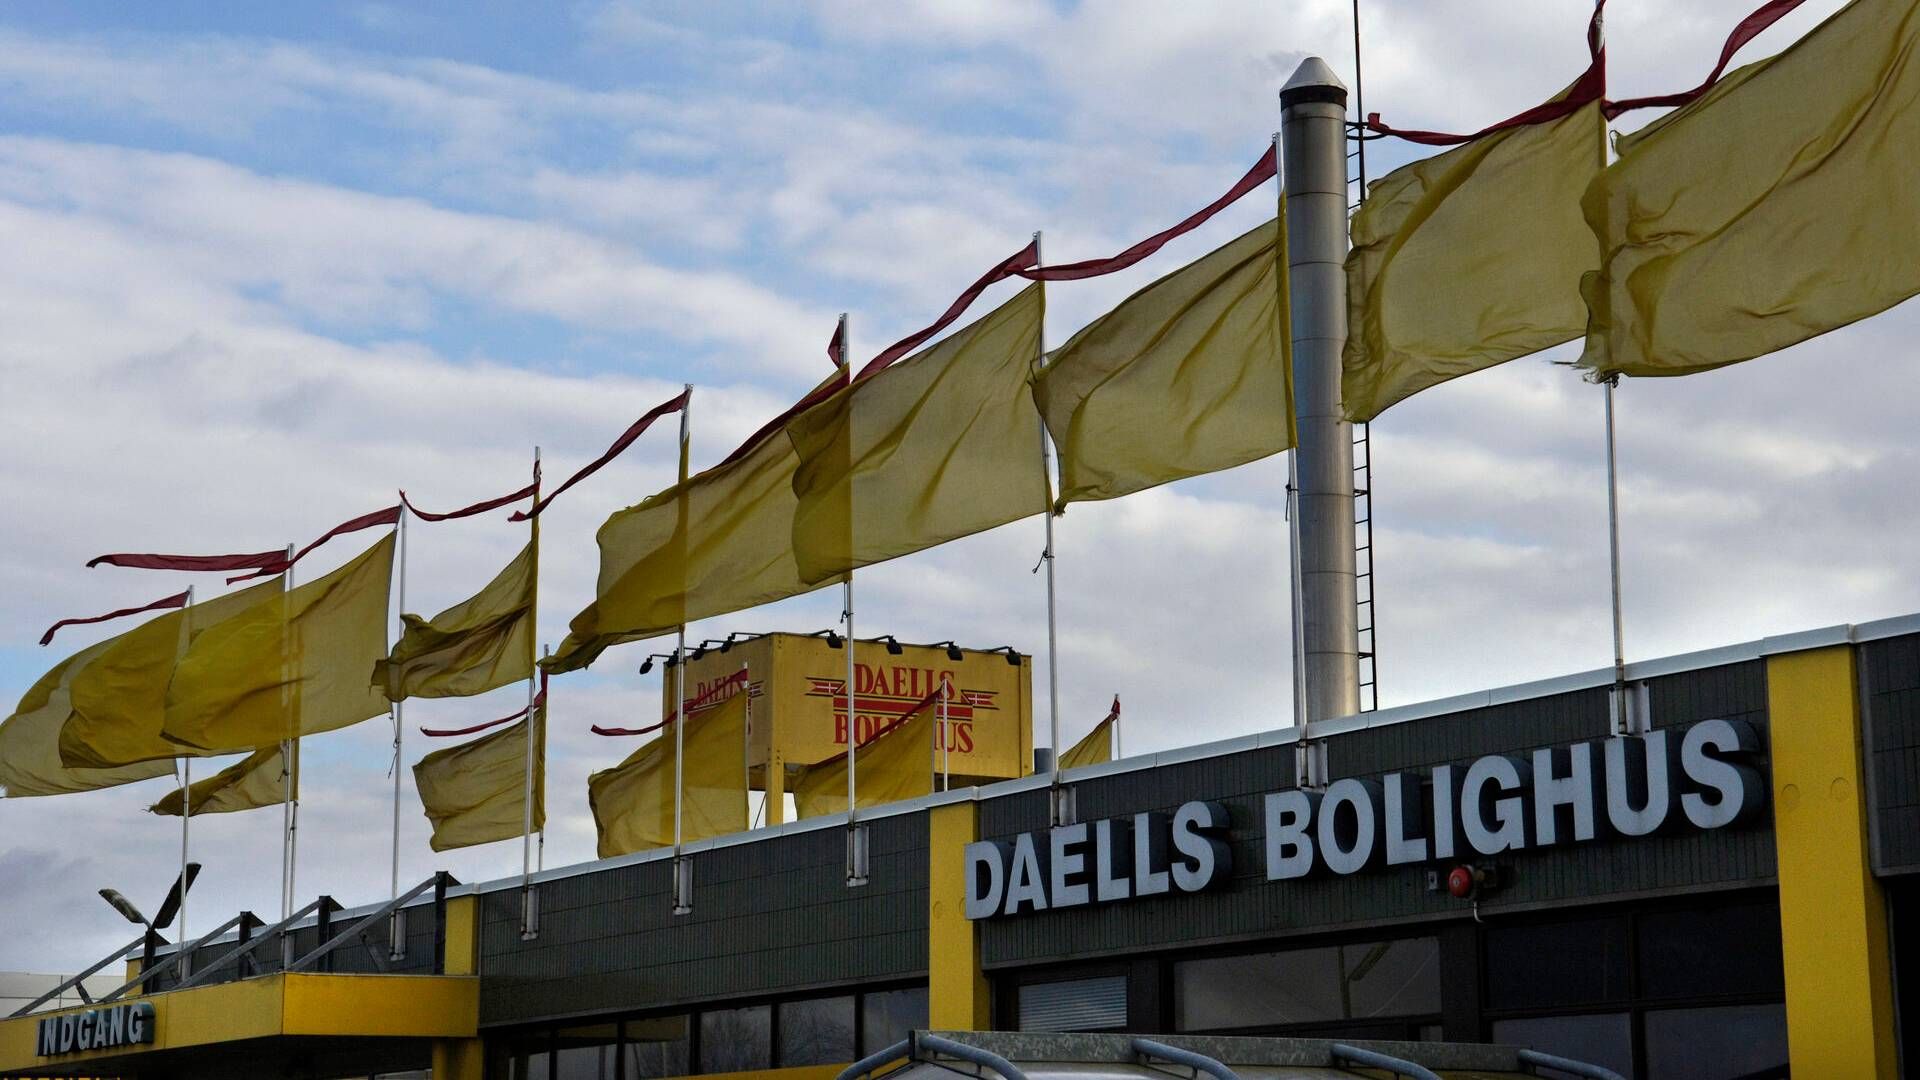 Daells Bolighus har i dag to butikker, der ligger i henholdsvis Glostrup og Odense. Møbelkæden er en del af Harald Nyborg-koncernen, der også står bag Jem & Fix. | Foto: Jens Dige/Ritzau Scanpix